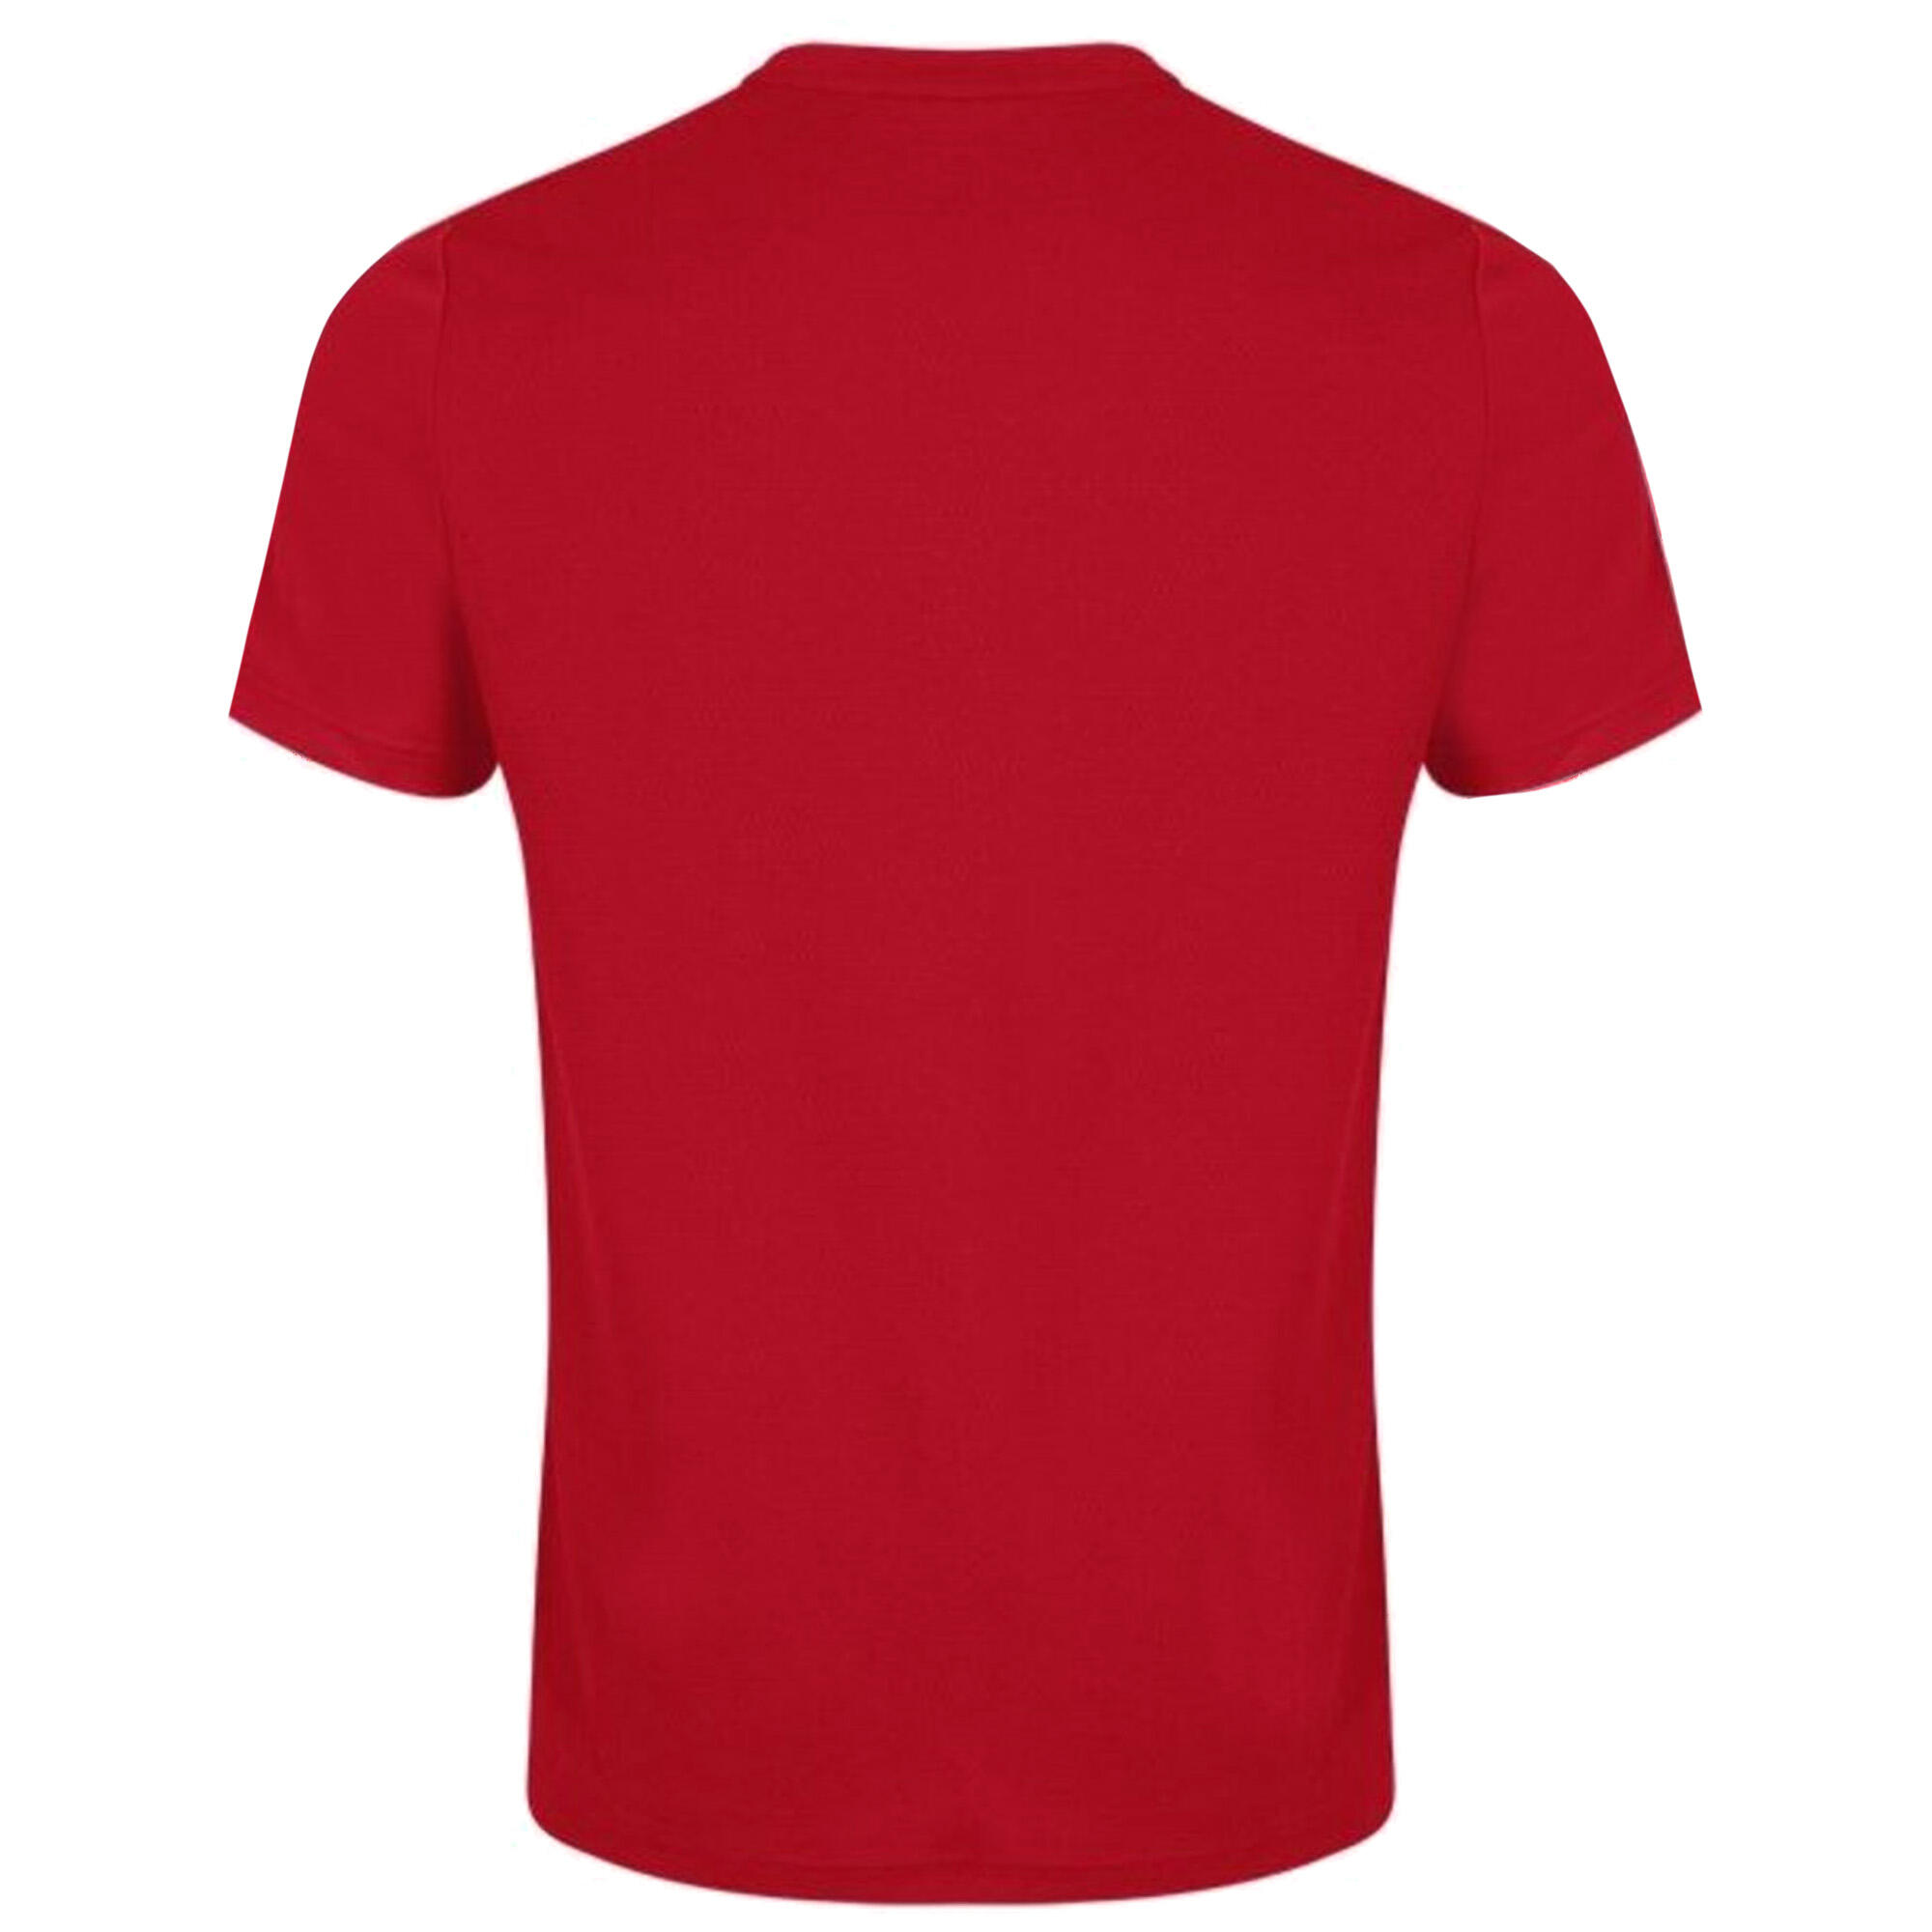 Unisex Adult Club Dry TShirt (Red) 2/3